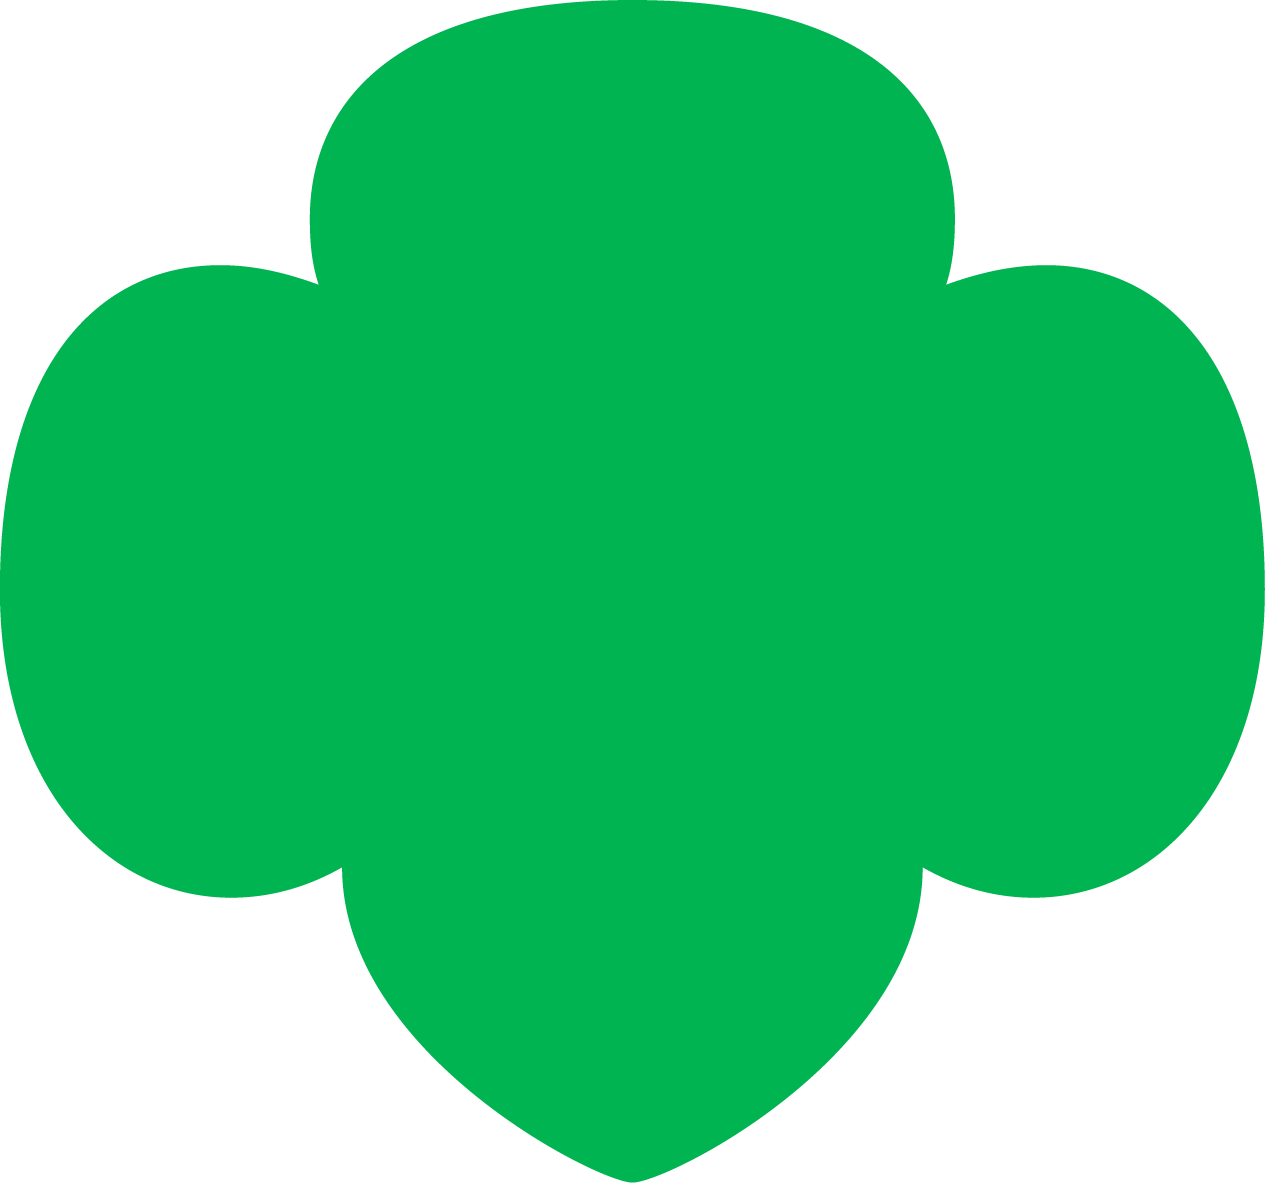 Logo- the Trefoil